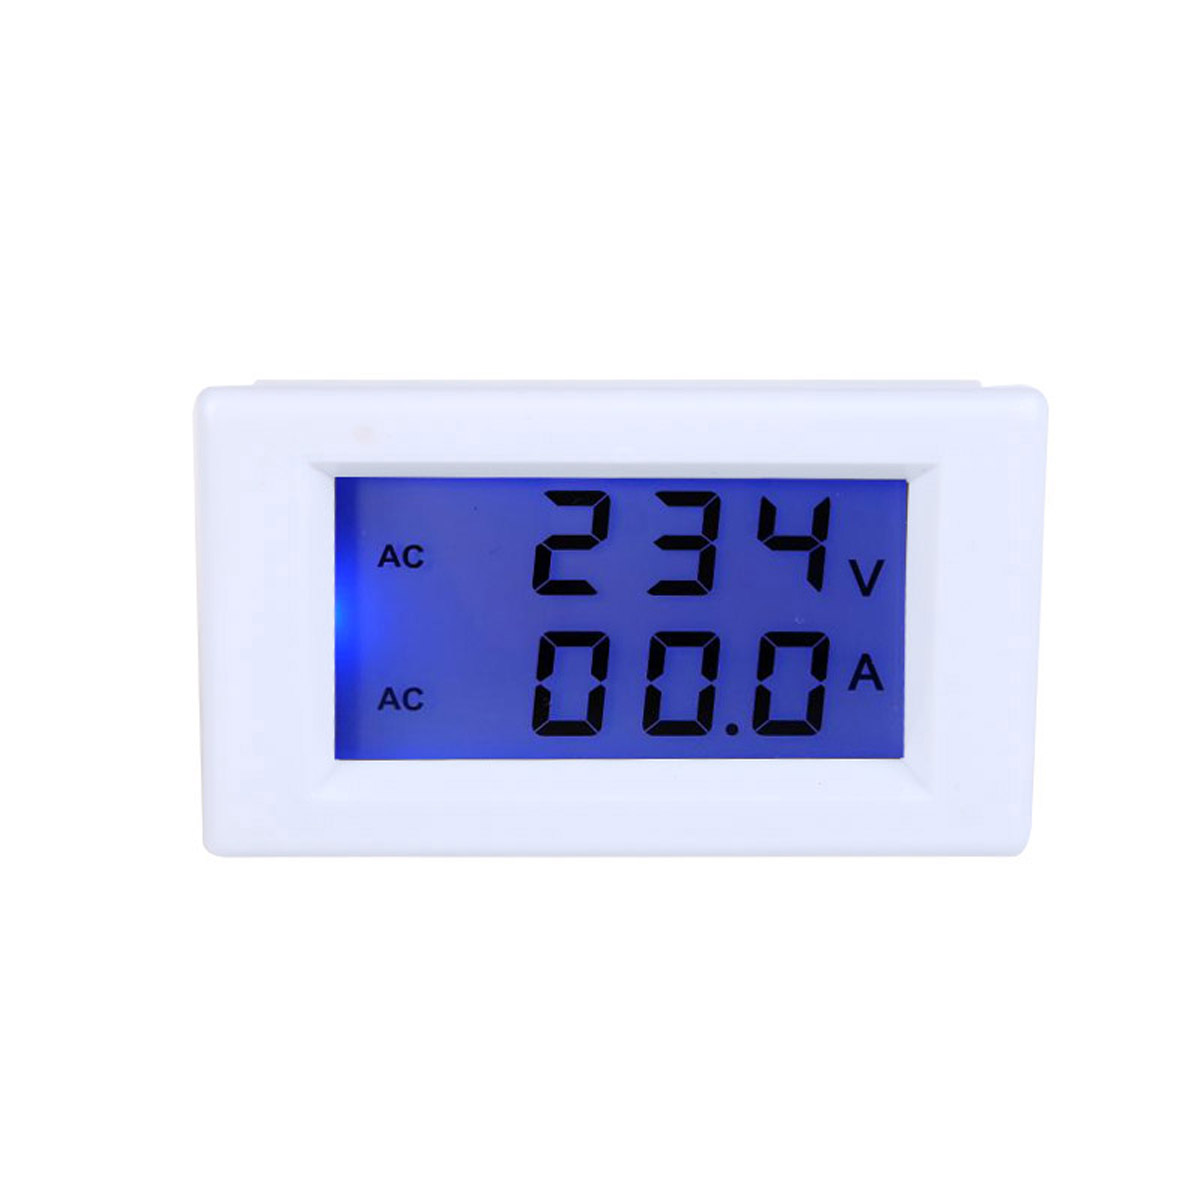 D85-2041-LCD-Display-Digital-AC100-300V-50A-Ammeter-Voltmeter-Meter-Tester-Amp-Panel-Meter-With-Blue-1443865-1